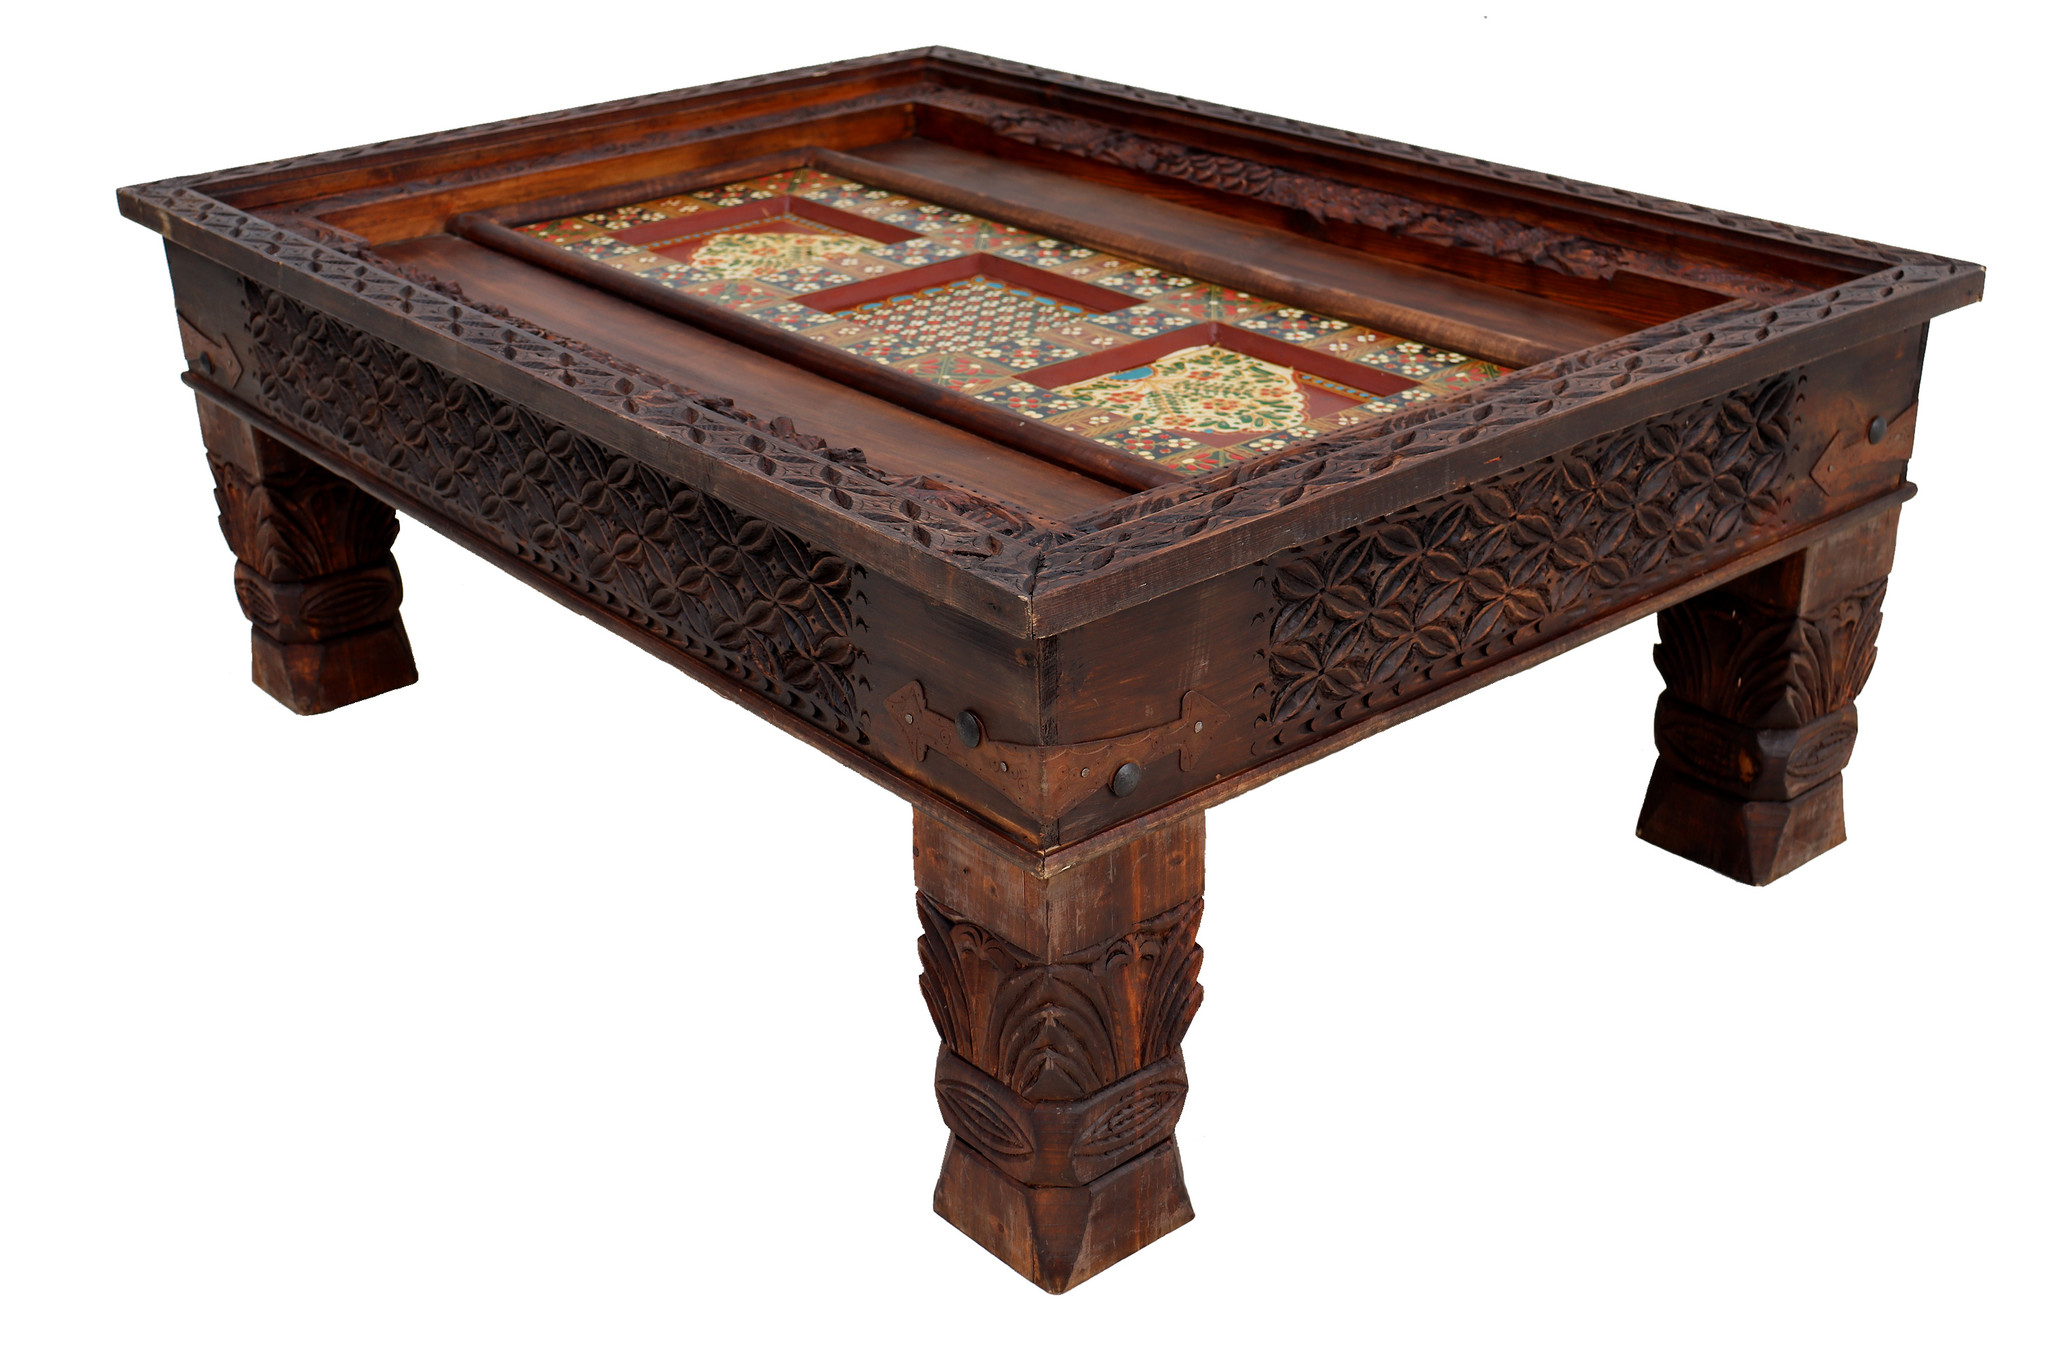 120x90 cm handgeschnitzt massivholz kolonialstil Wohnzimmertisch Tisch Couchtisch aus Afghanistan Nuristan Nr:23AA